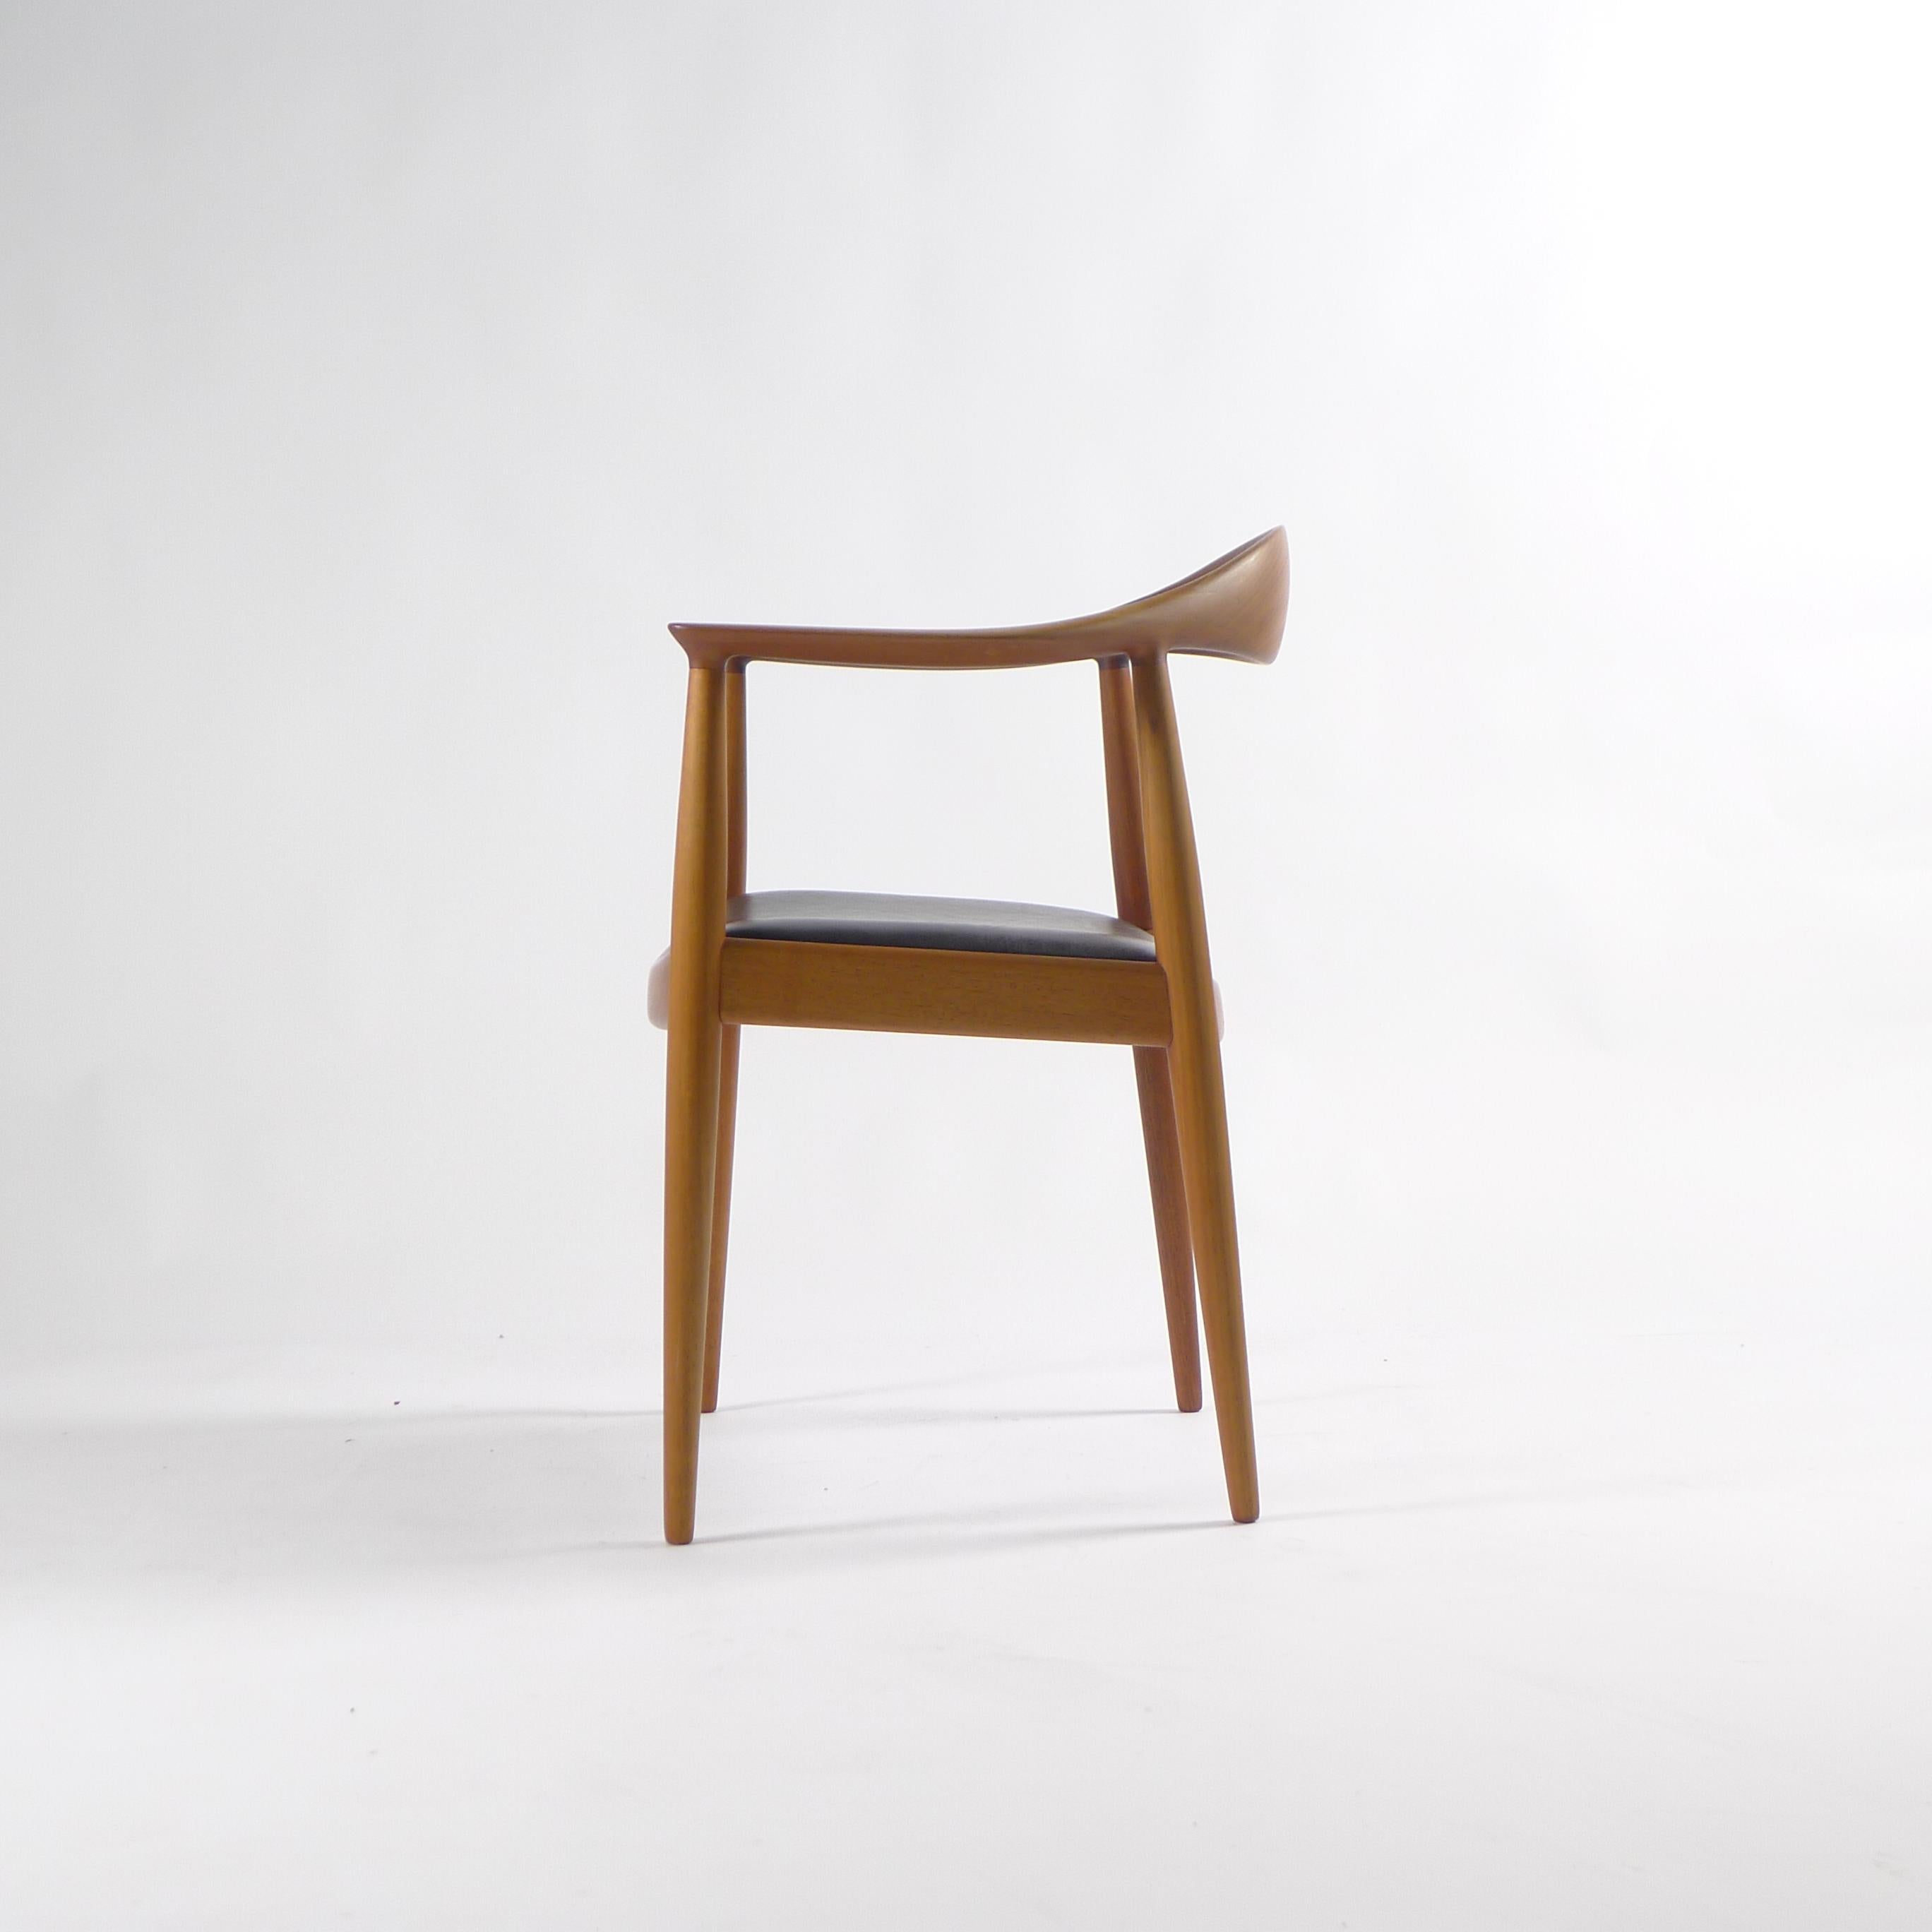 Hans J. Wegner, The Chair/Round Chair, Design 1949, für Johannes Hansen, Dänemark (Dänisch)